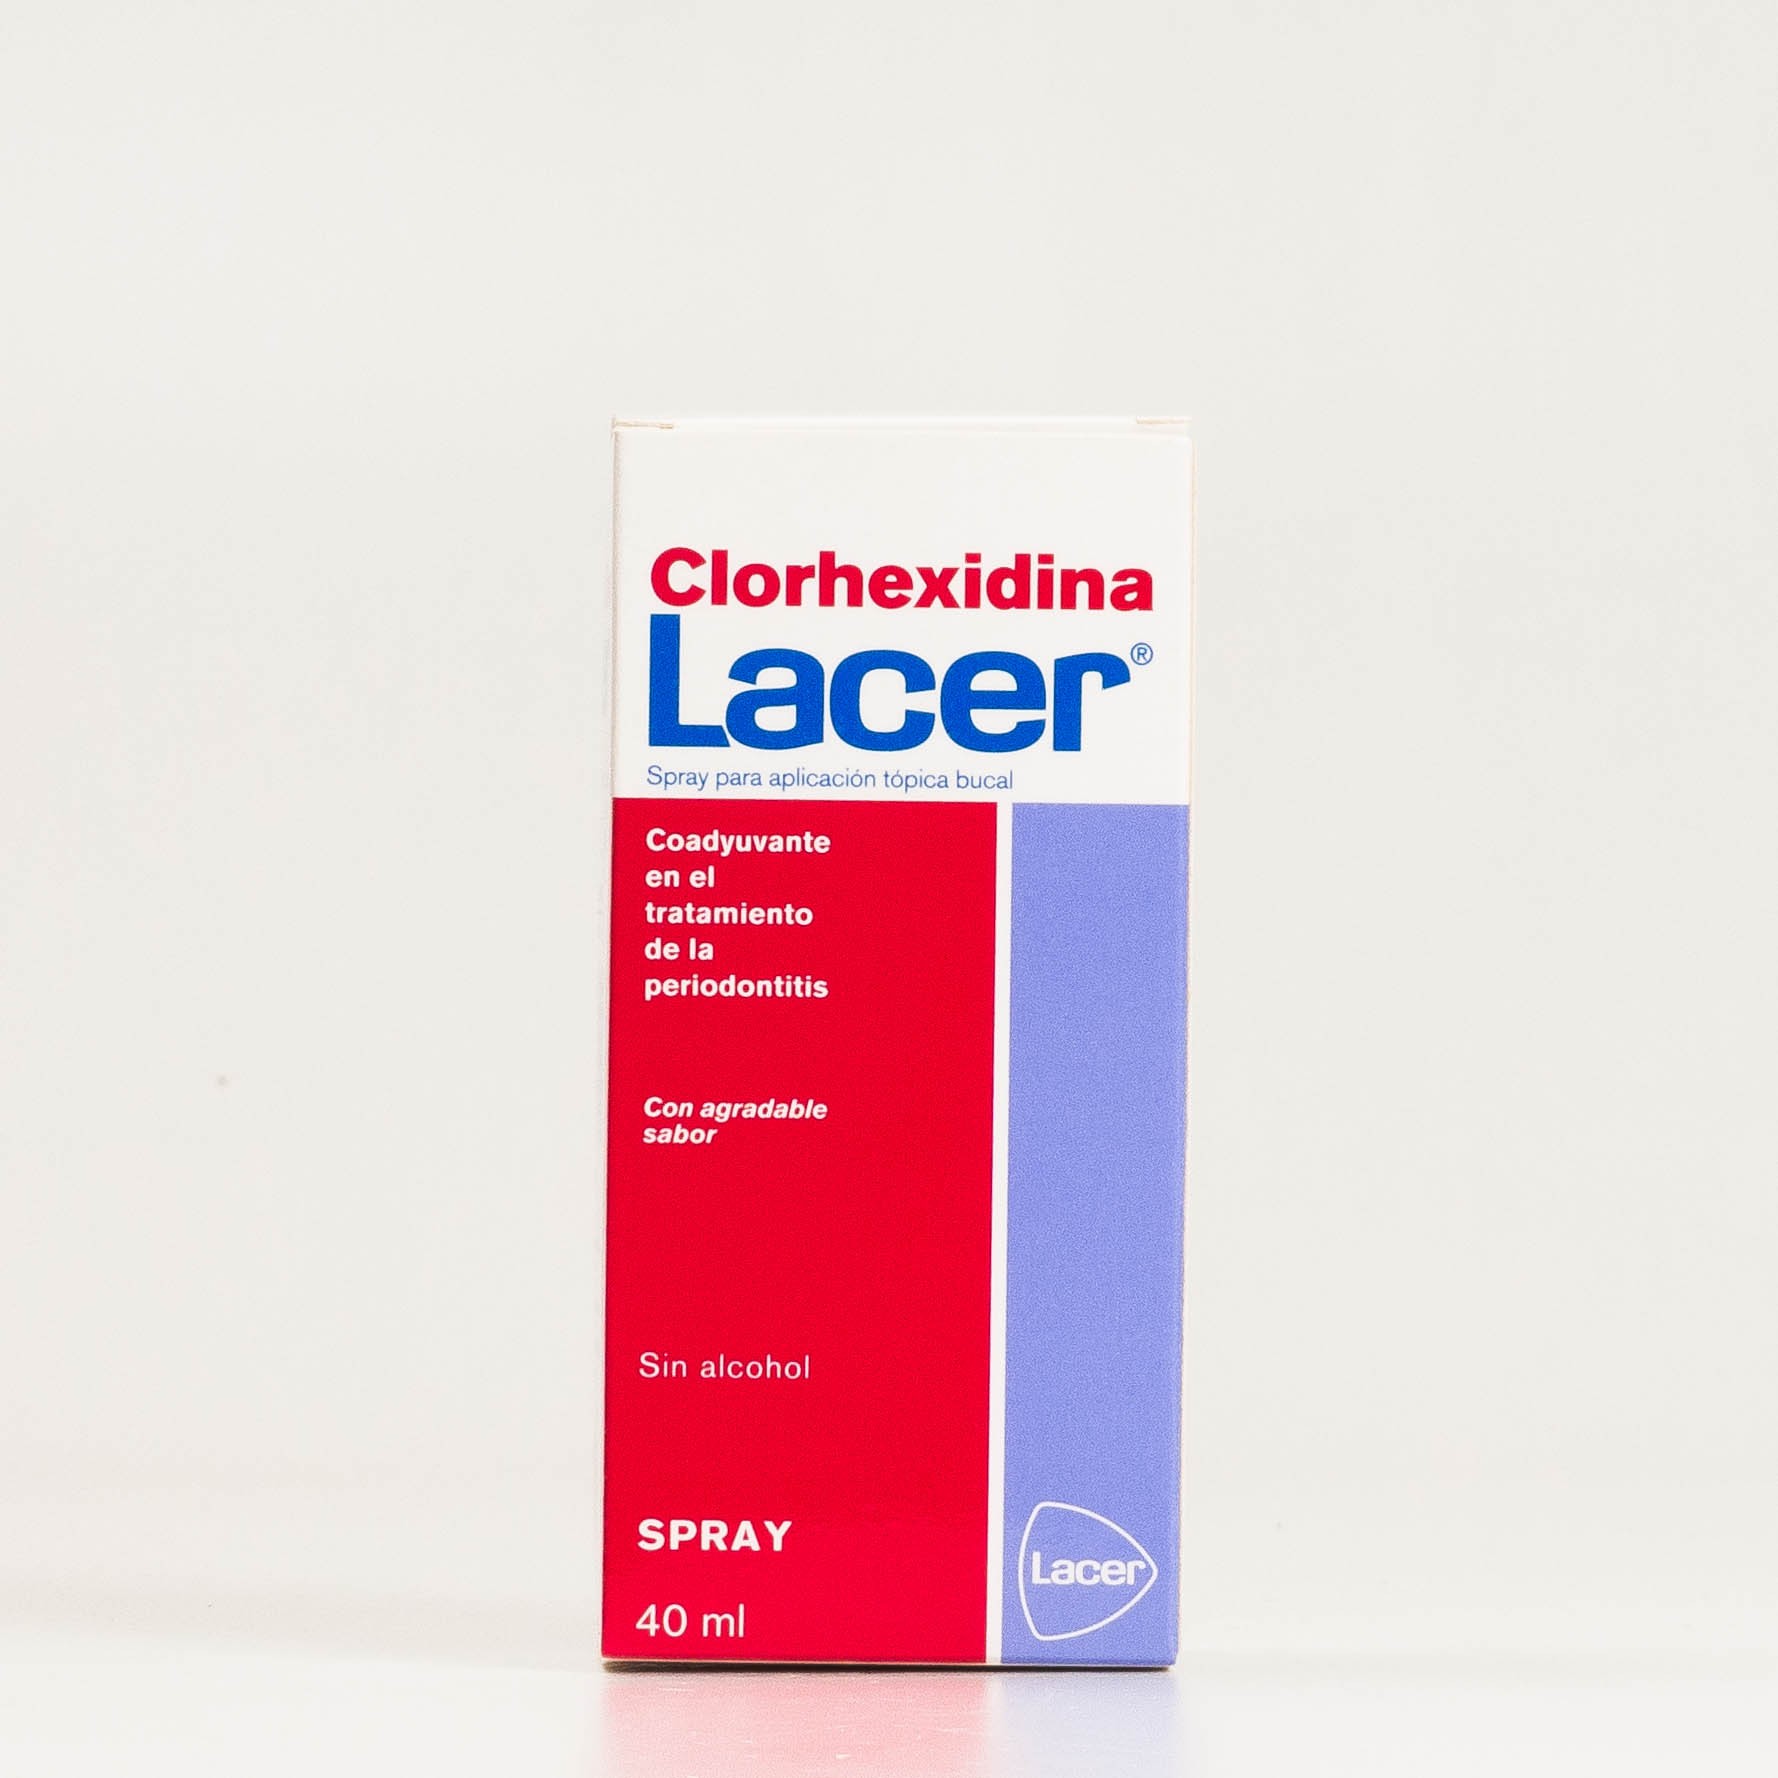 Lacer Colutorio Clorhexidina Spray, 40ml.